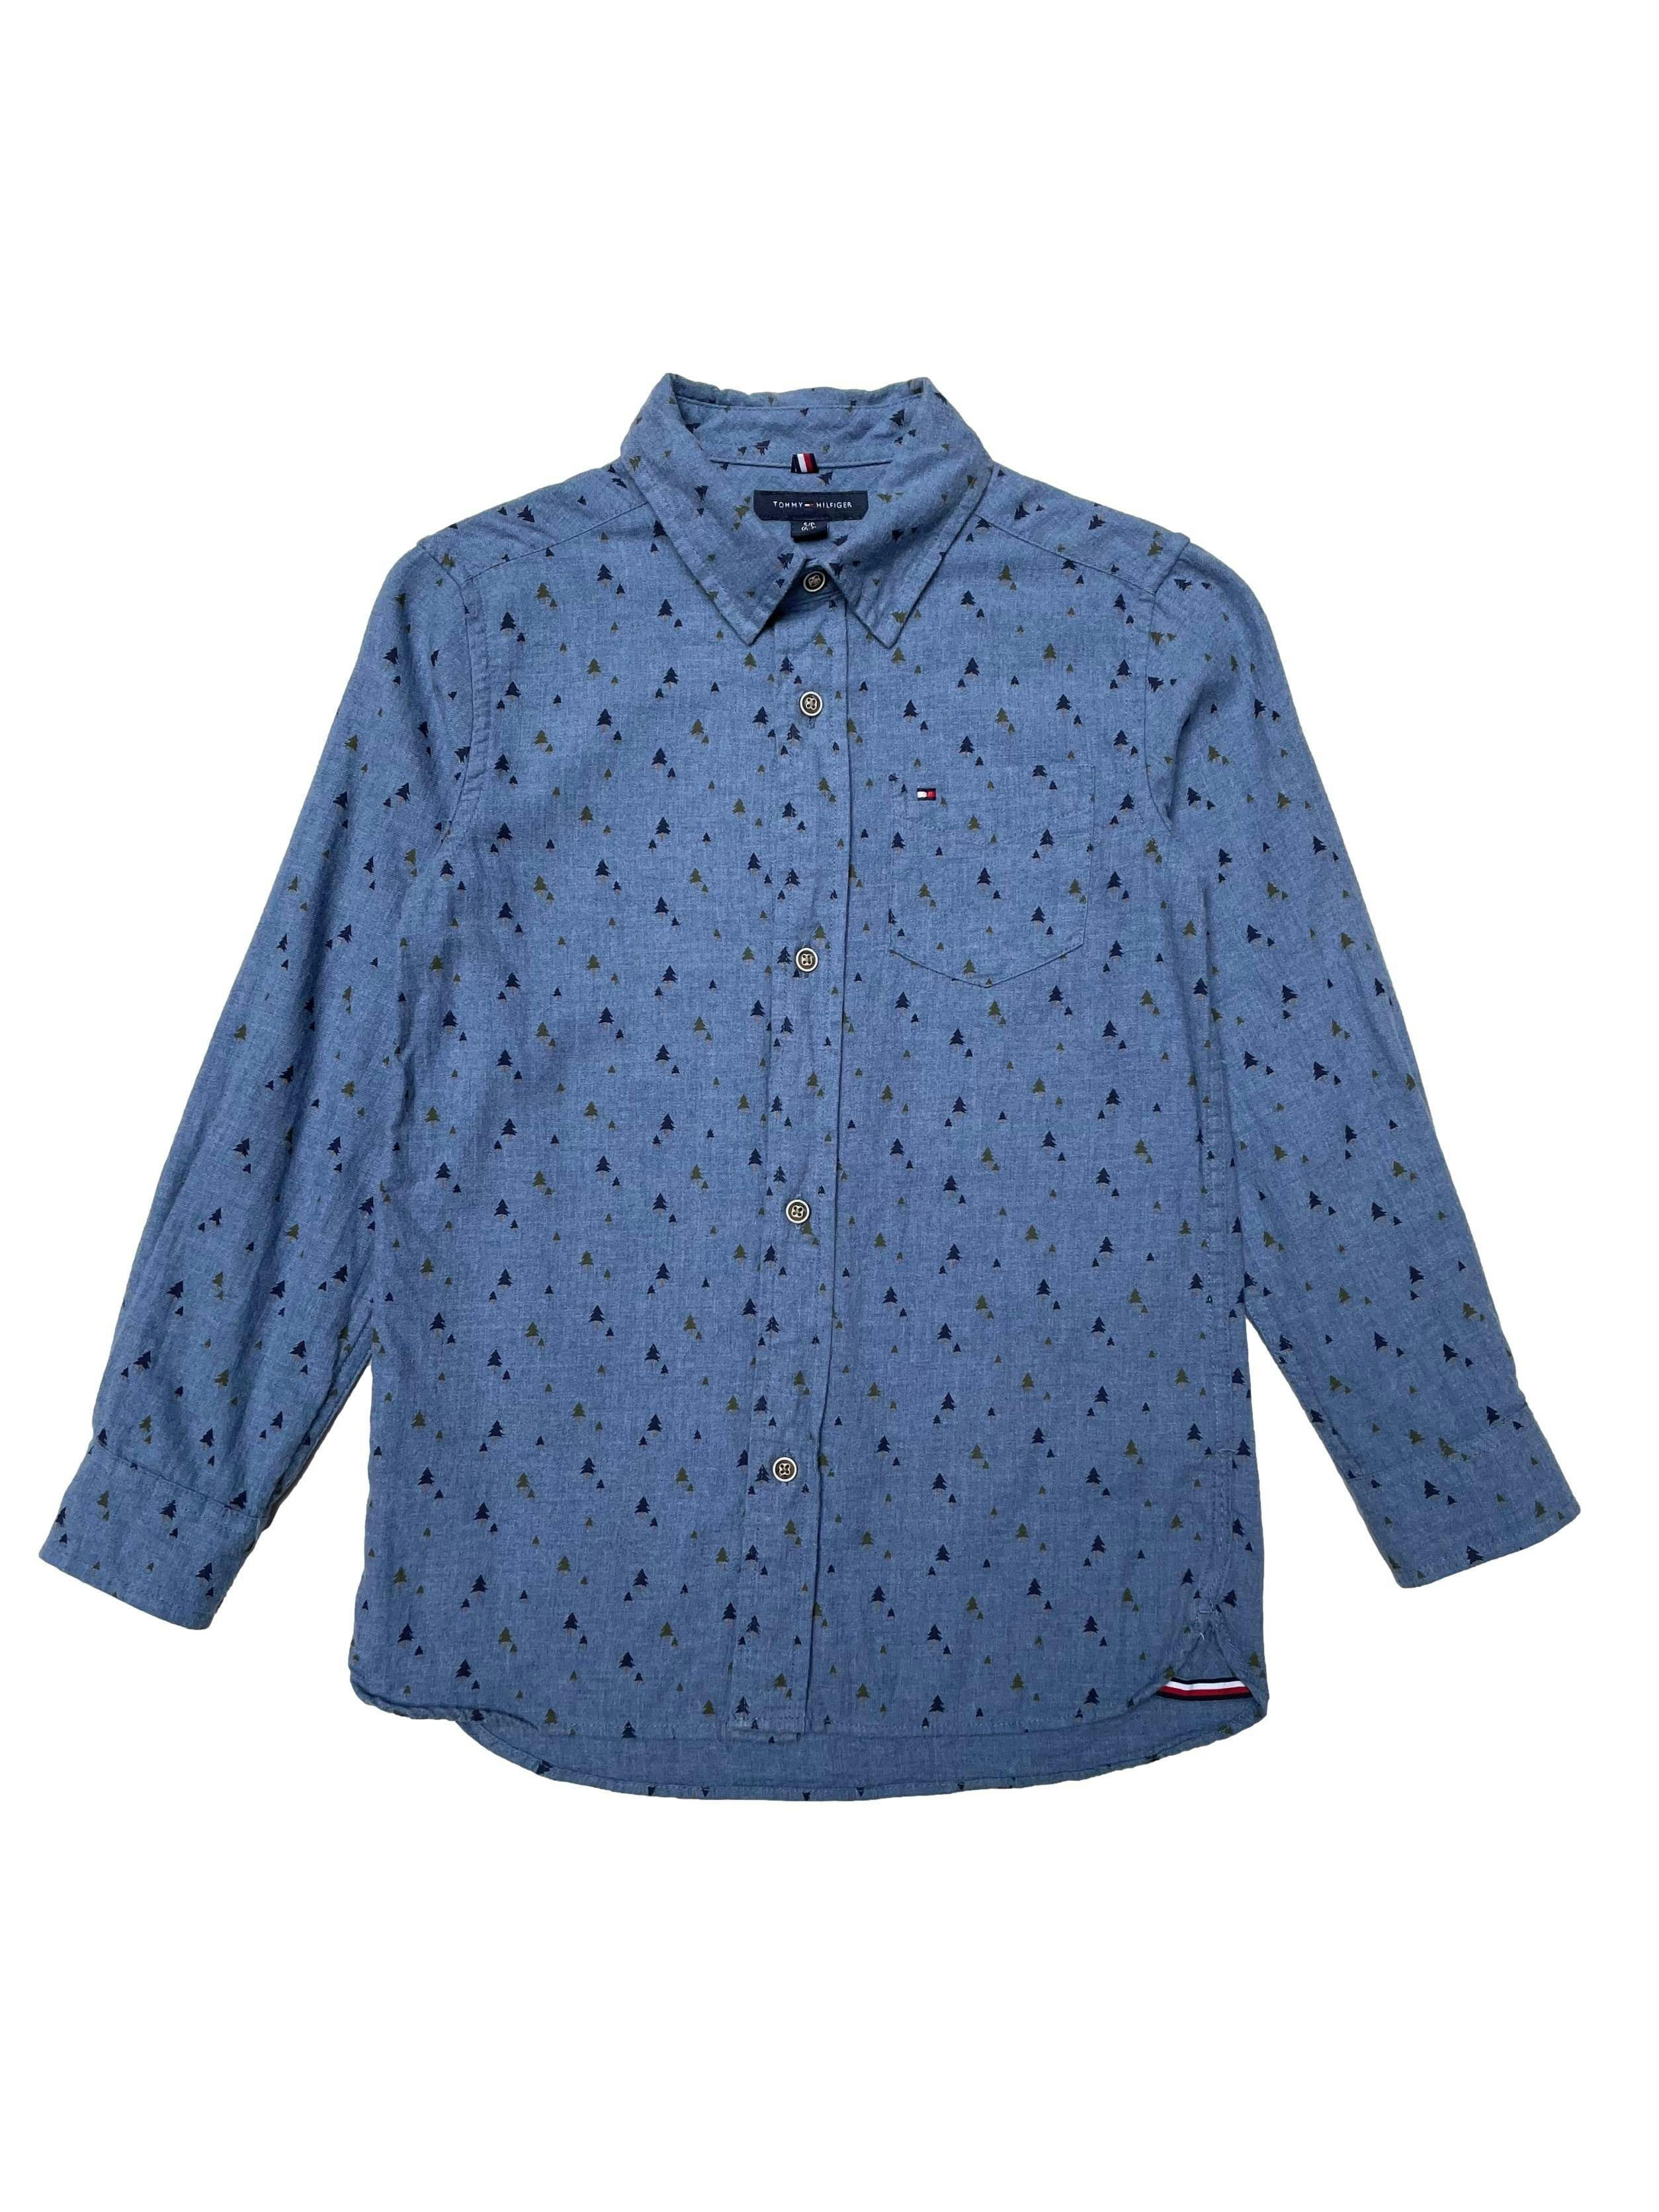 Camisa Tommy Hilfiger 100% algodón azul con estampado de pinos, bolsillo en el pecho y botones delanteros y en puños. Ancho 76cm Largo 50cm. Precio original S/ 239